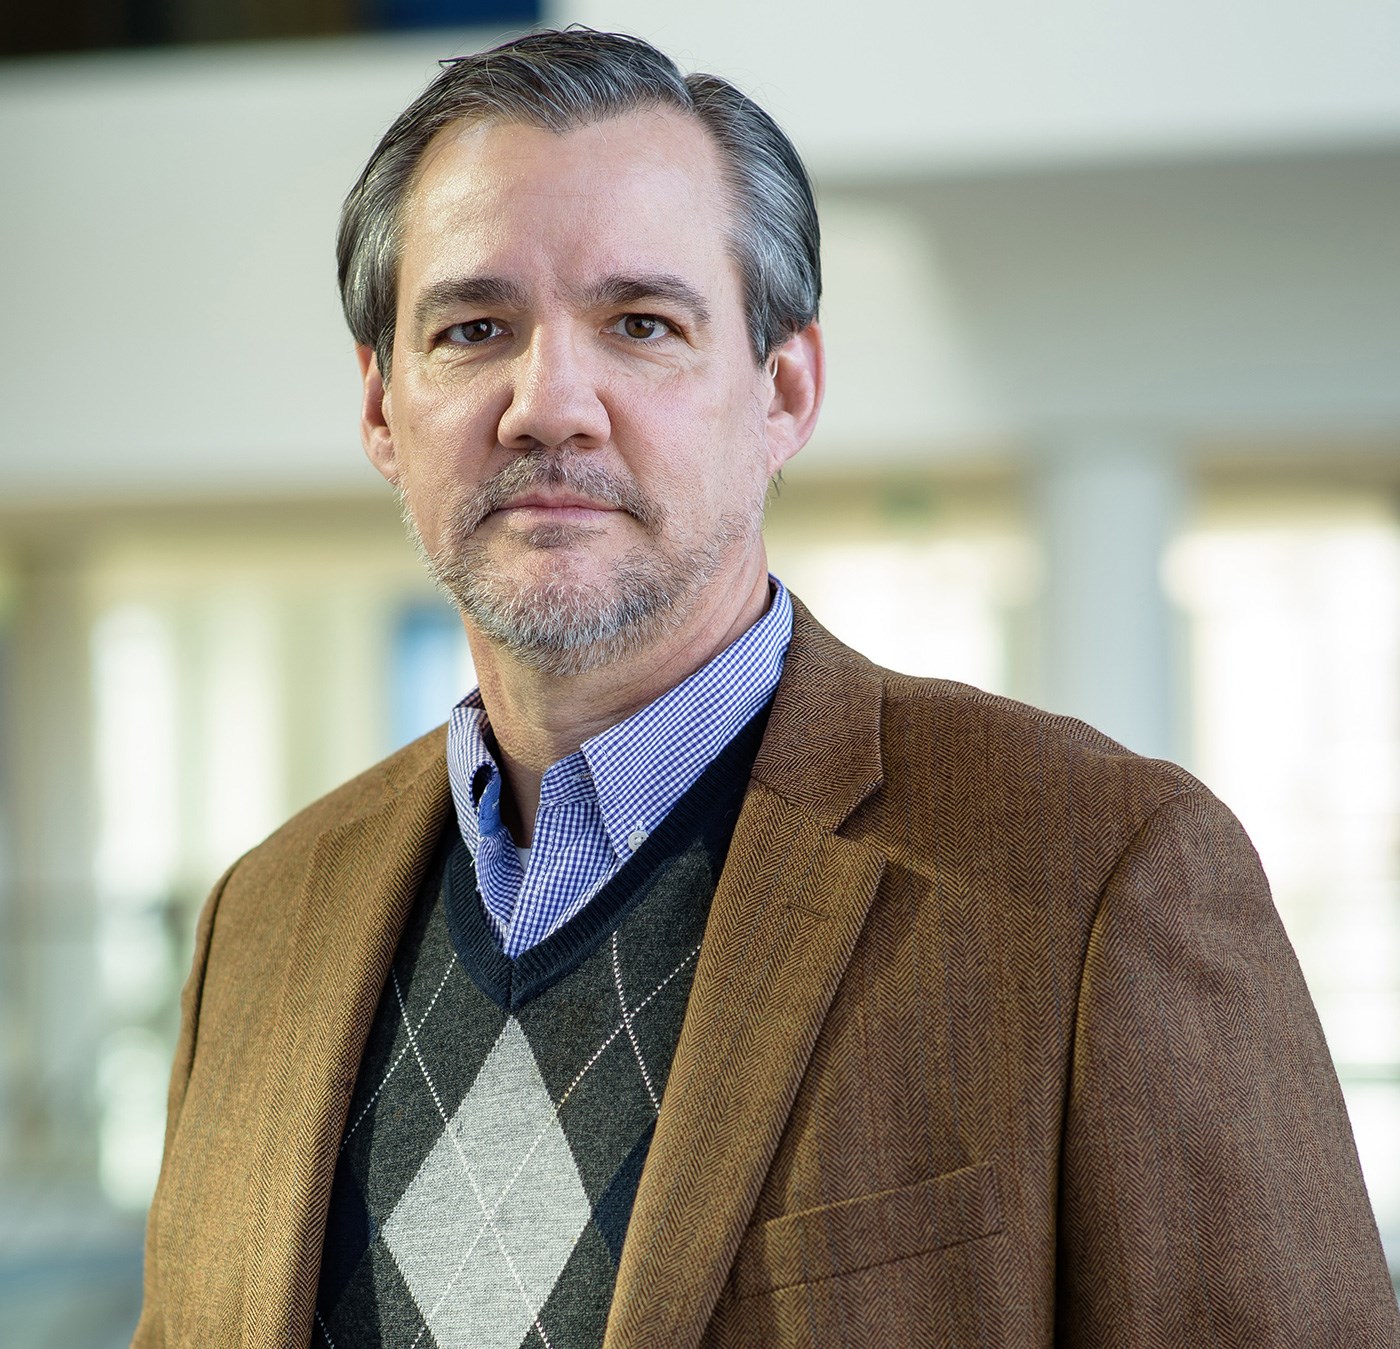 Michael Graves is an Associate Professor, Associate Chair, Department of Biology at UMass Lowell.